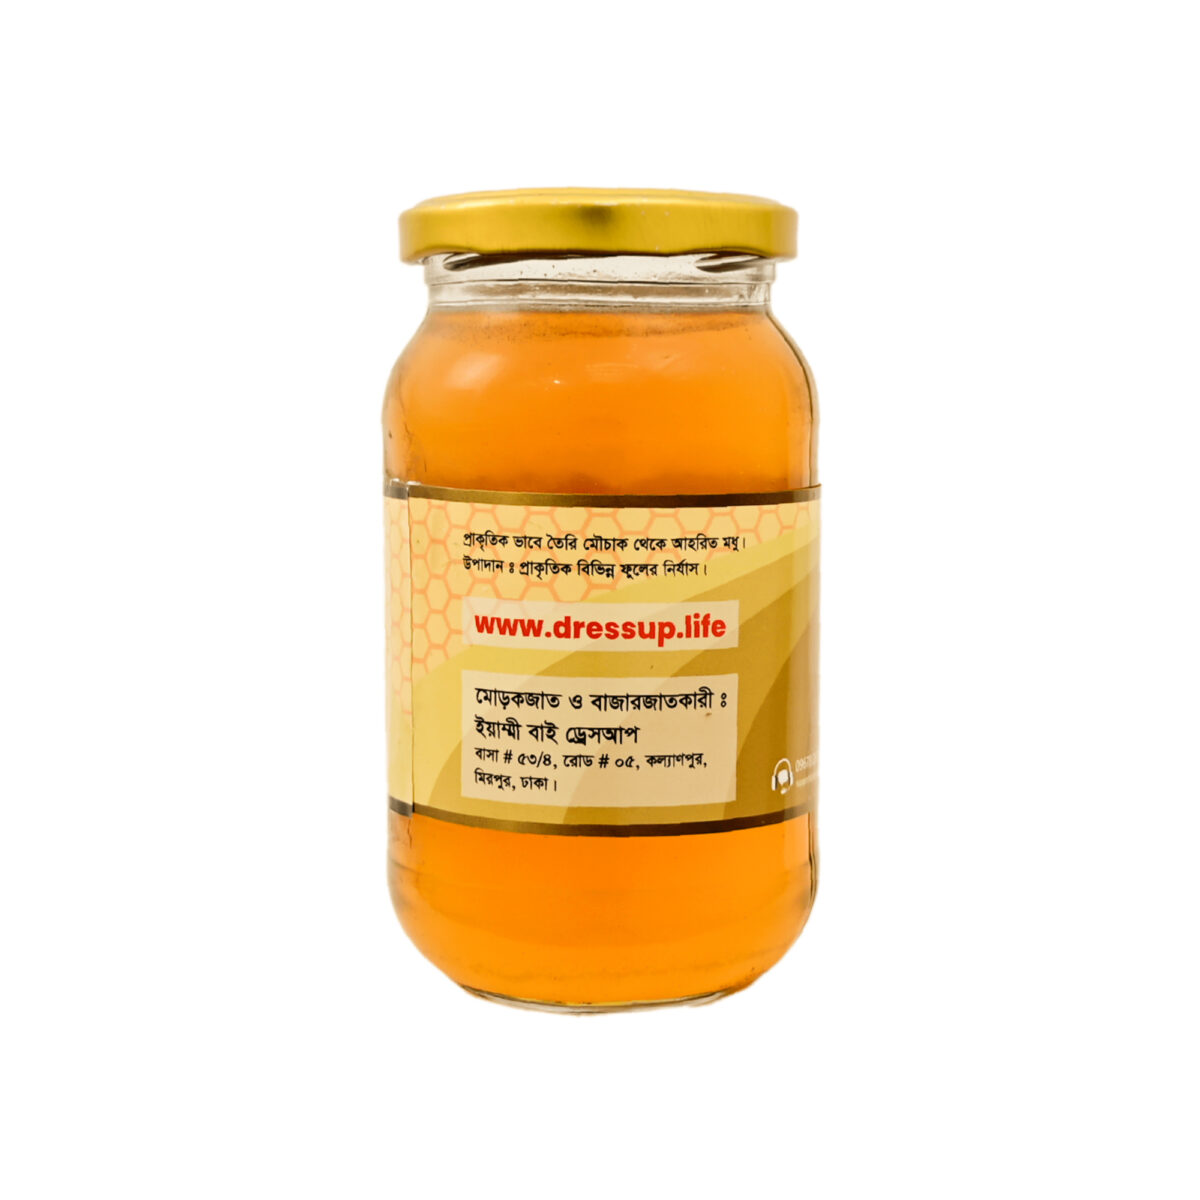 yummy honey ইয়াম্মী মধু (500 gm)